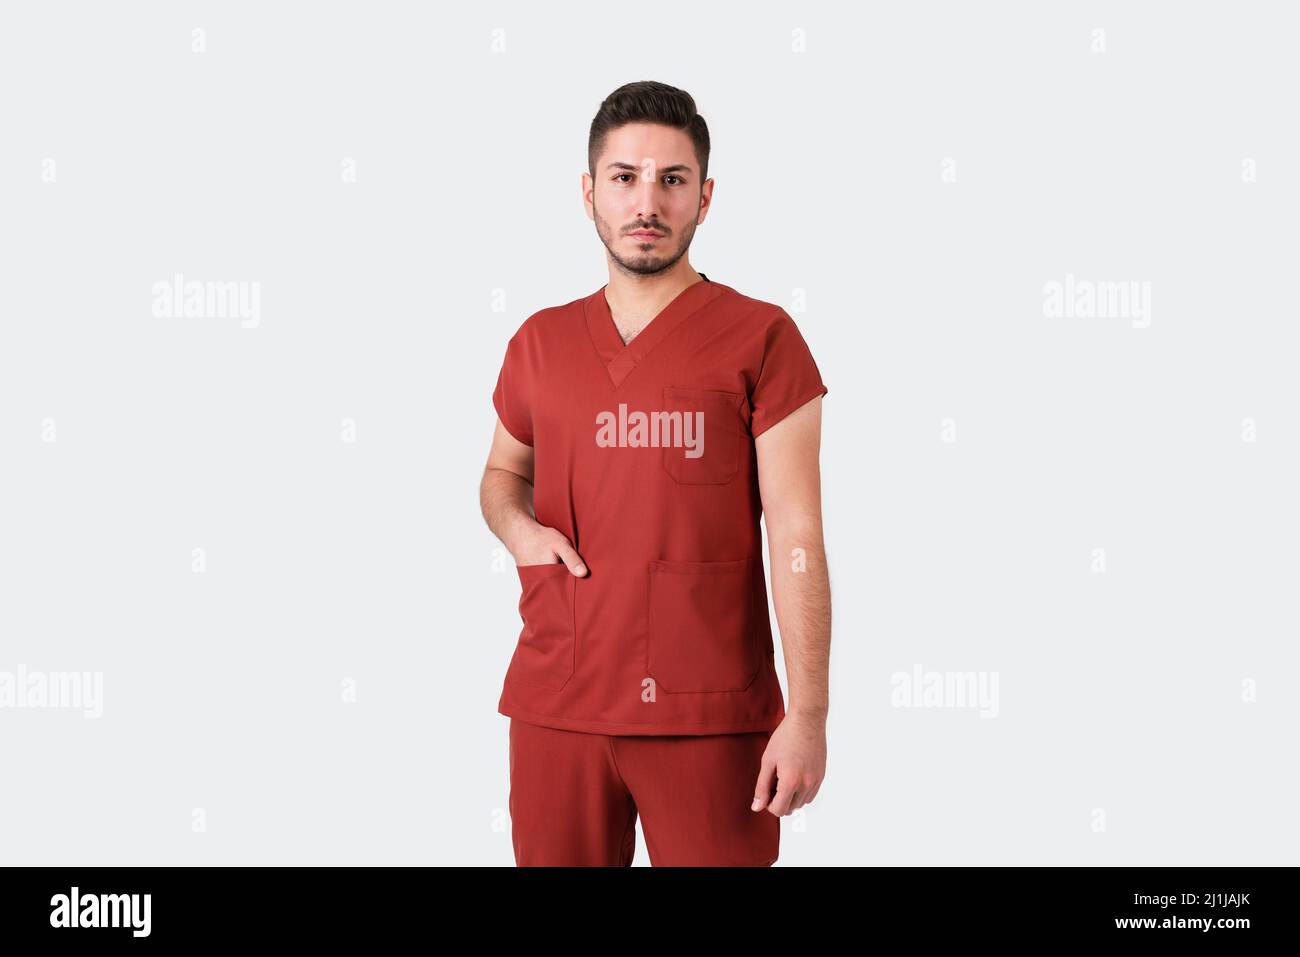 Ritratto di un medico o infermiere maschio che indossa uniforme medica borgogna. Foto di alta qualità Foto Stock